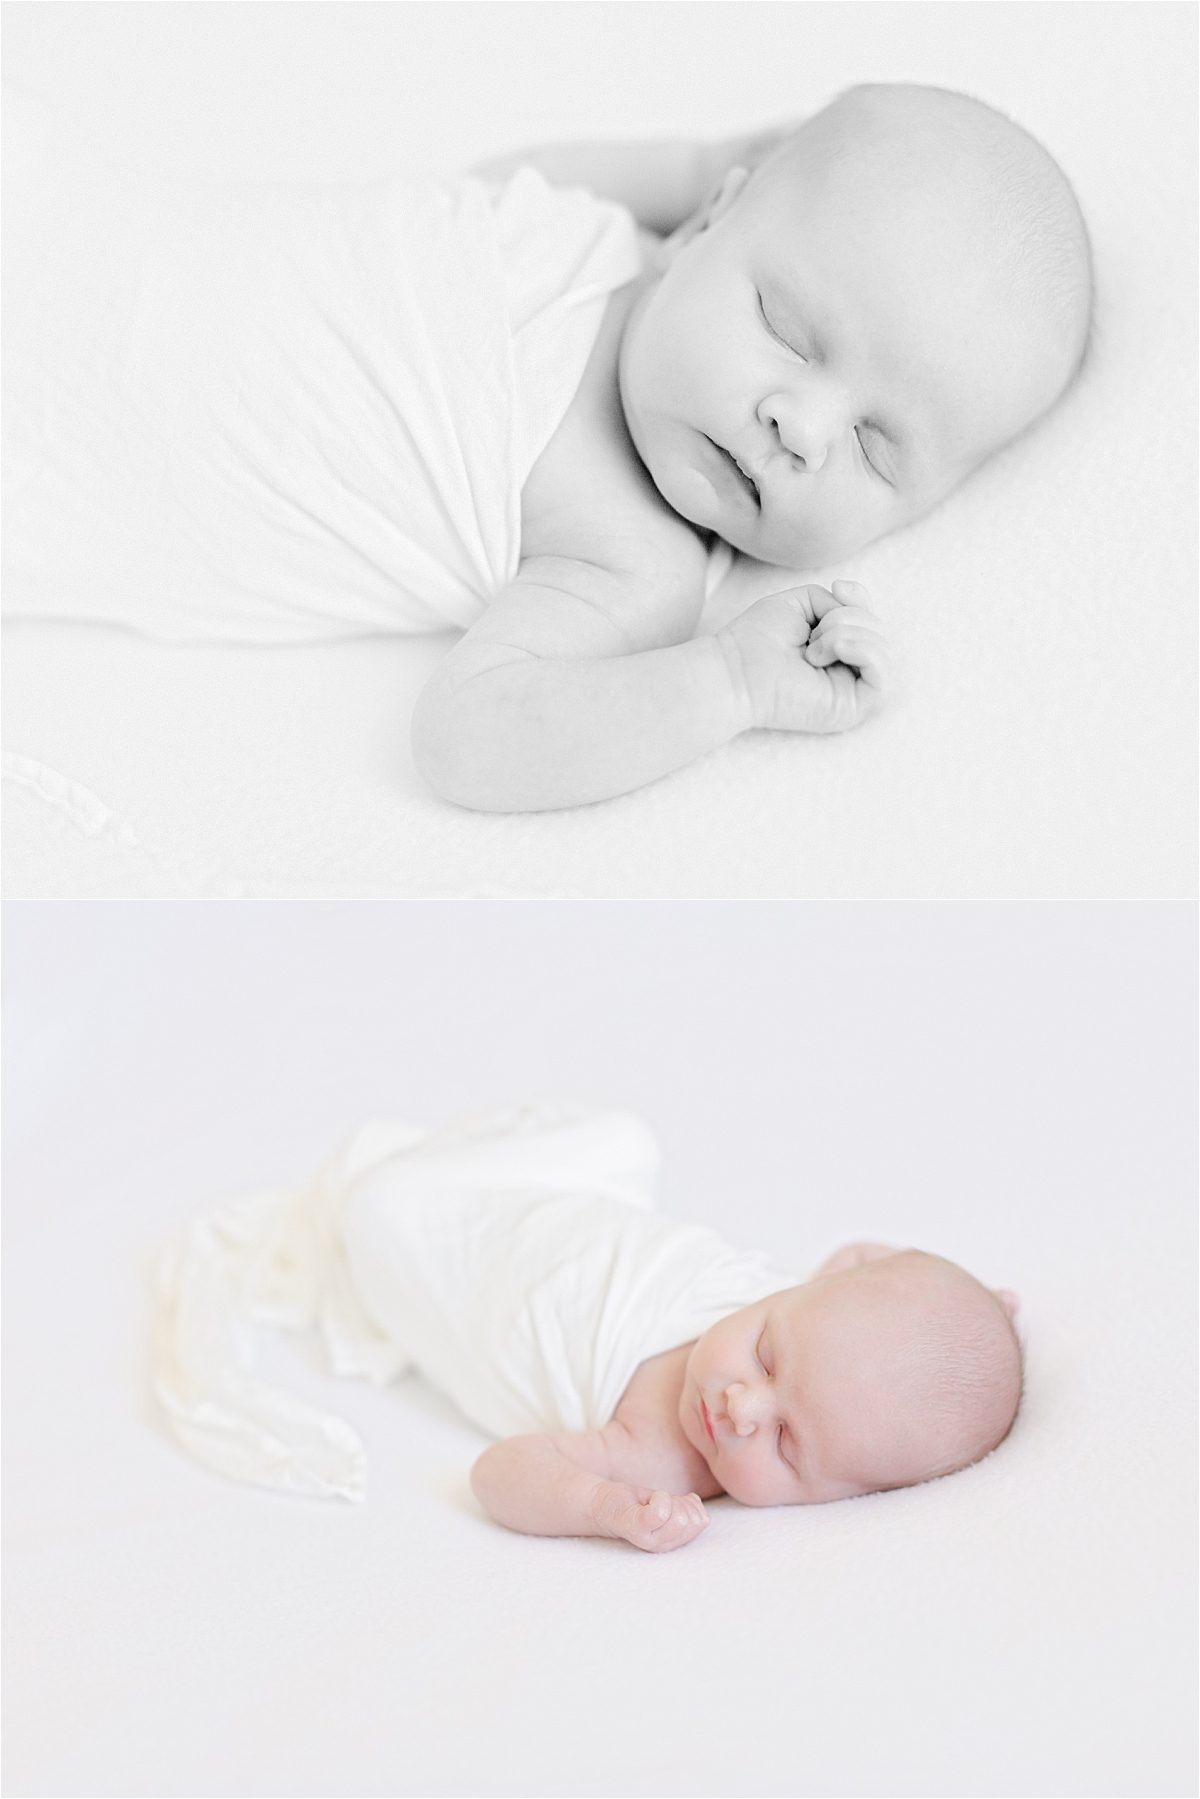 Atlanta newborn portrait photography of infant swaddled